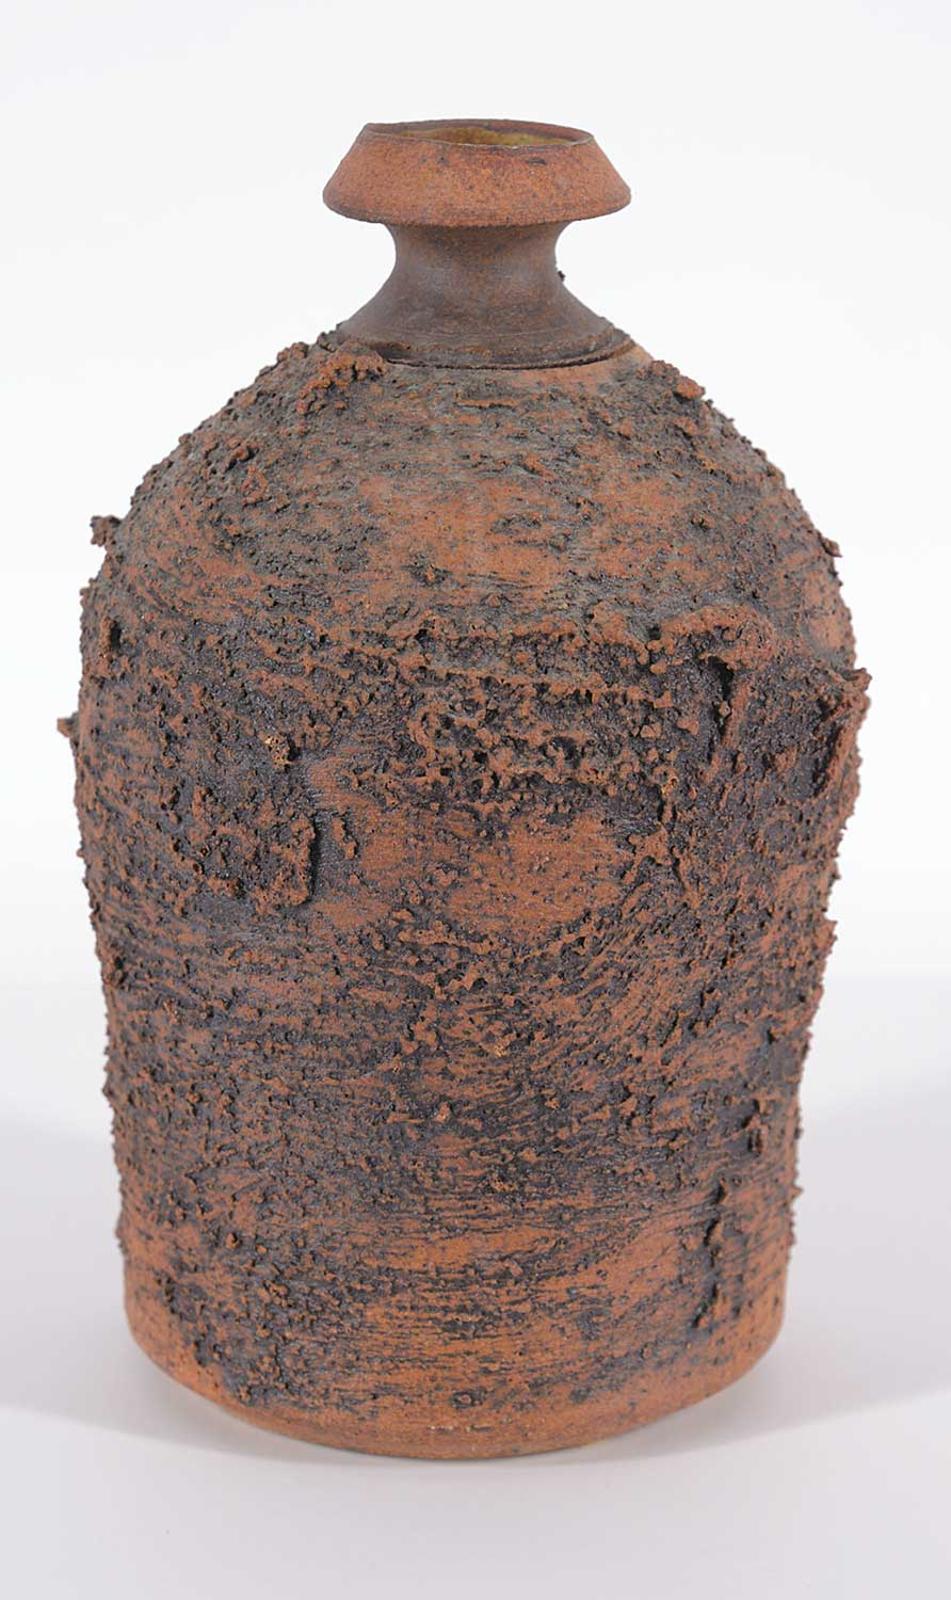 Edward Drahanchuk (1939) - Narrow Top Vase with Rough Surface